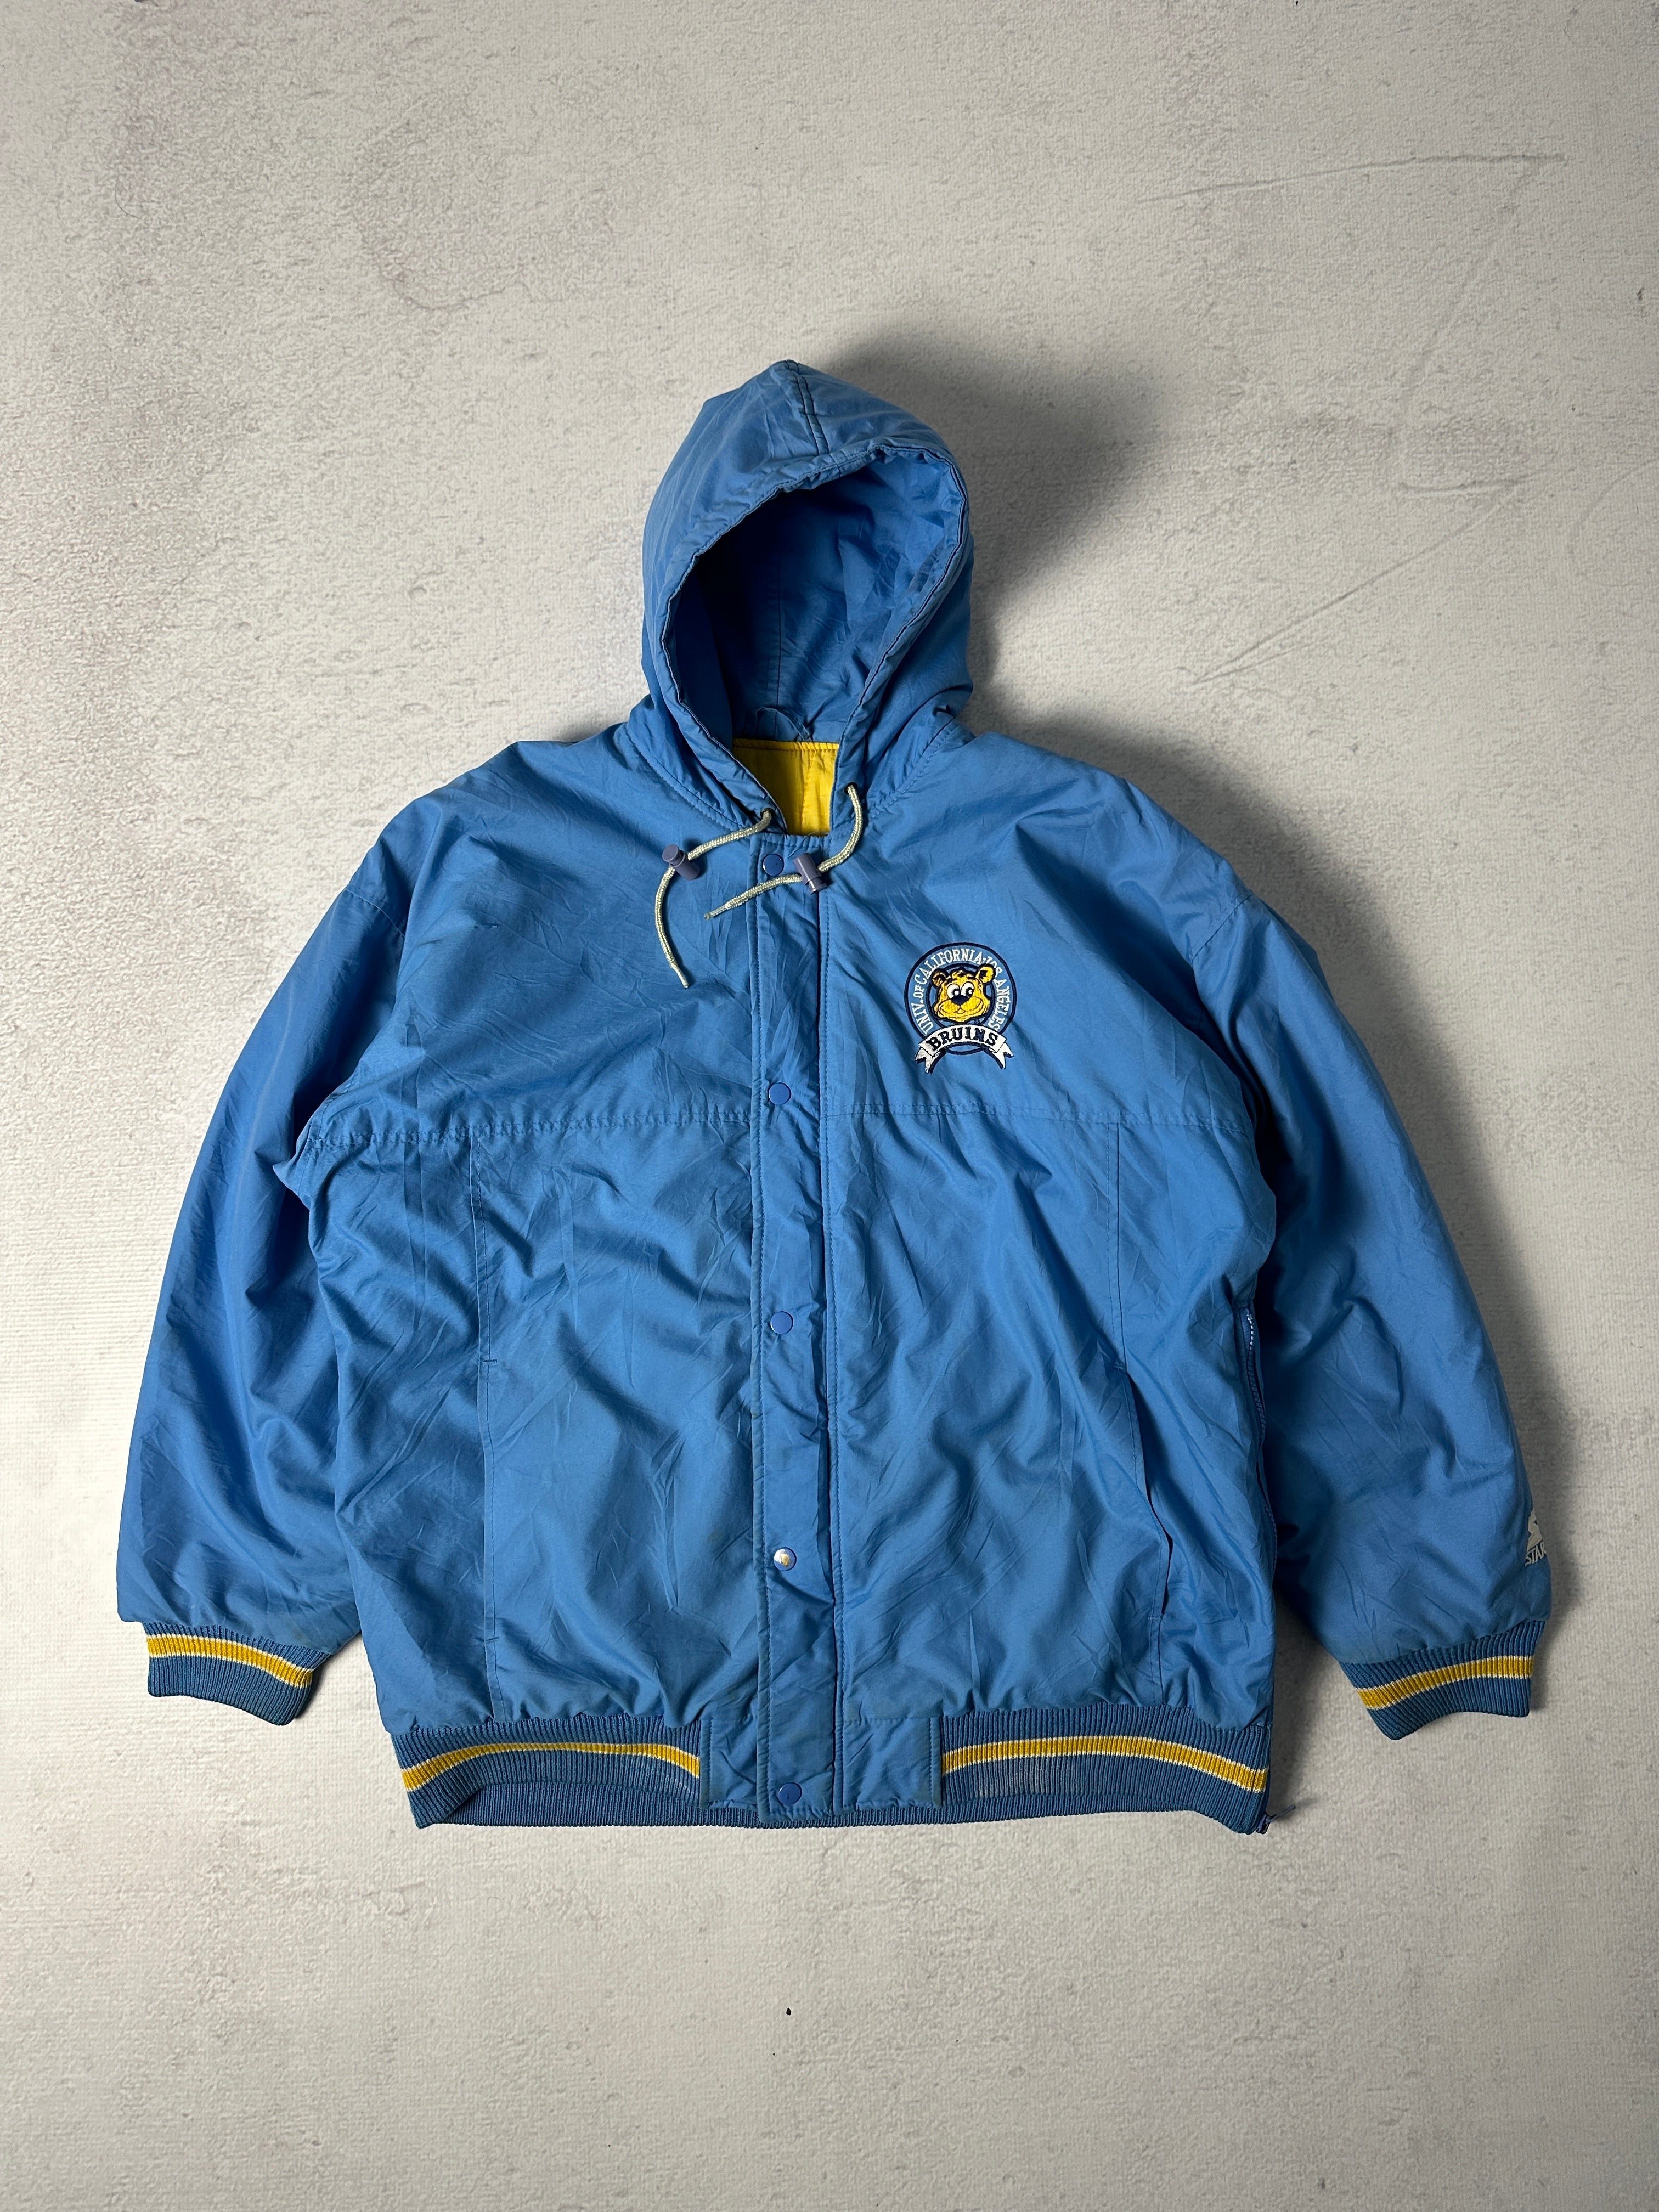 Vintage Starter UCLA Bruins Insulated Jacket - Men's Large